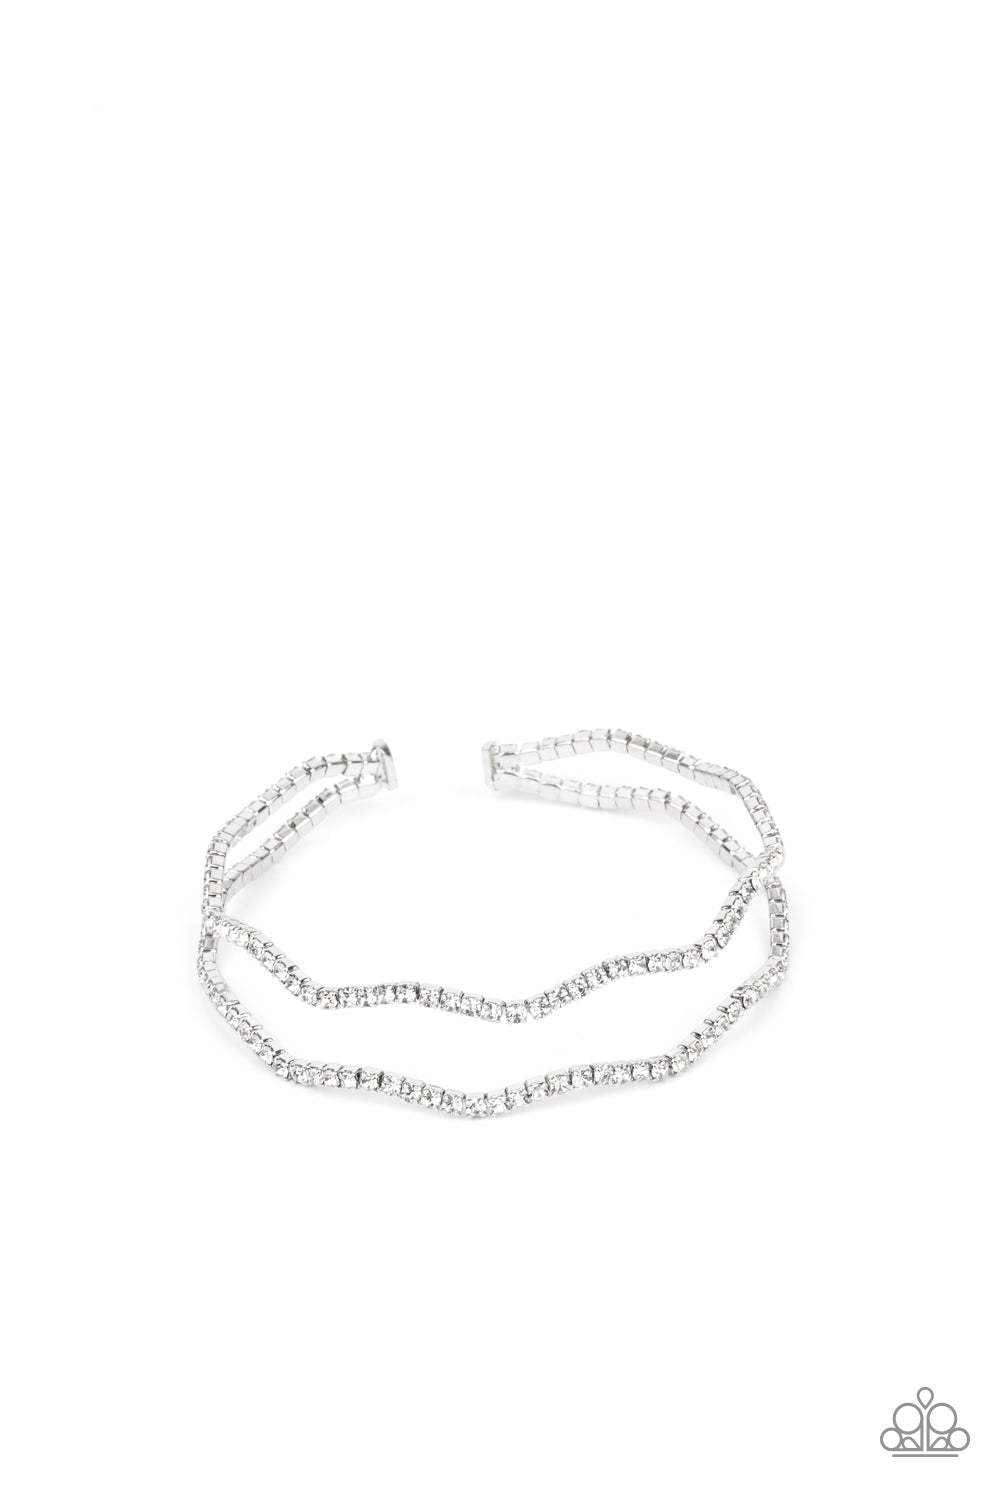 Delicate Dazzle Bracelet (White, Black, Gold)